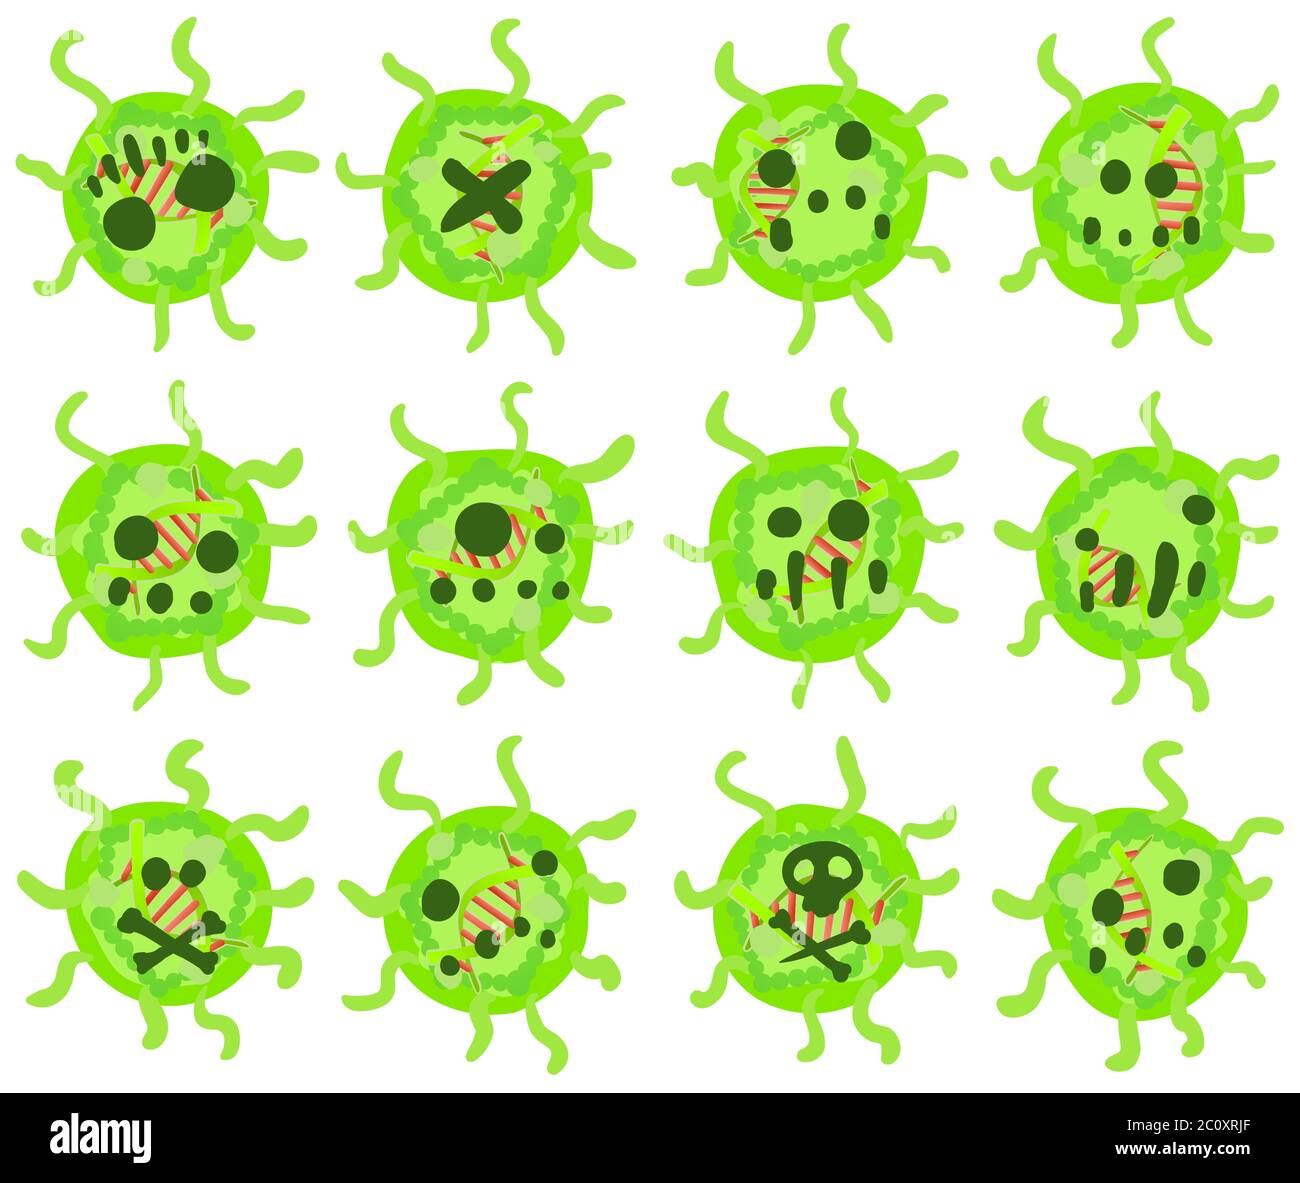 Virus ball caratteri piccoli rotondi cartoni verdi insieme di elementi di disegno, vettore isolato, orizzontale Illustrazione Vettoriale